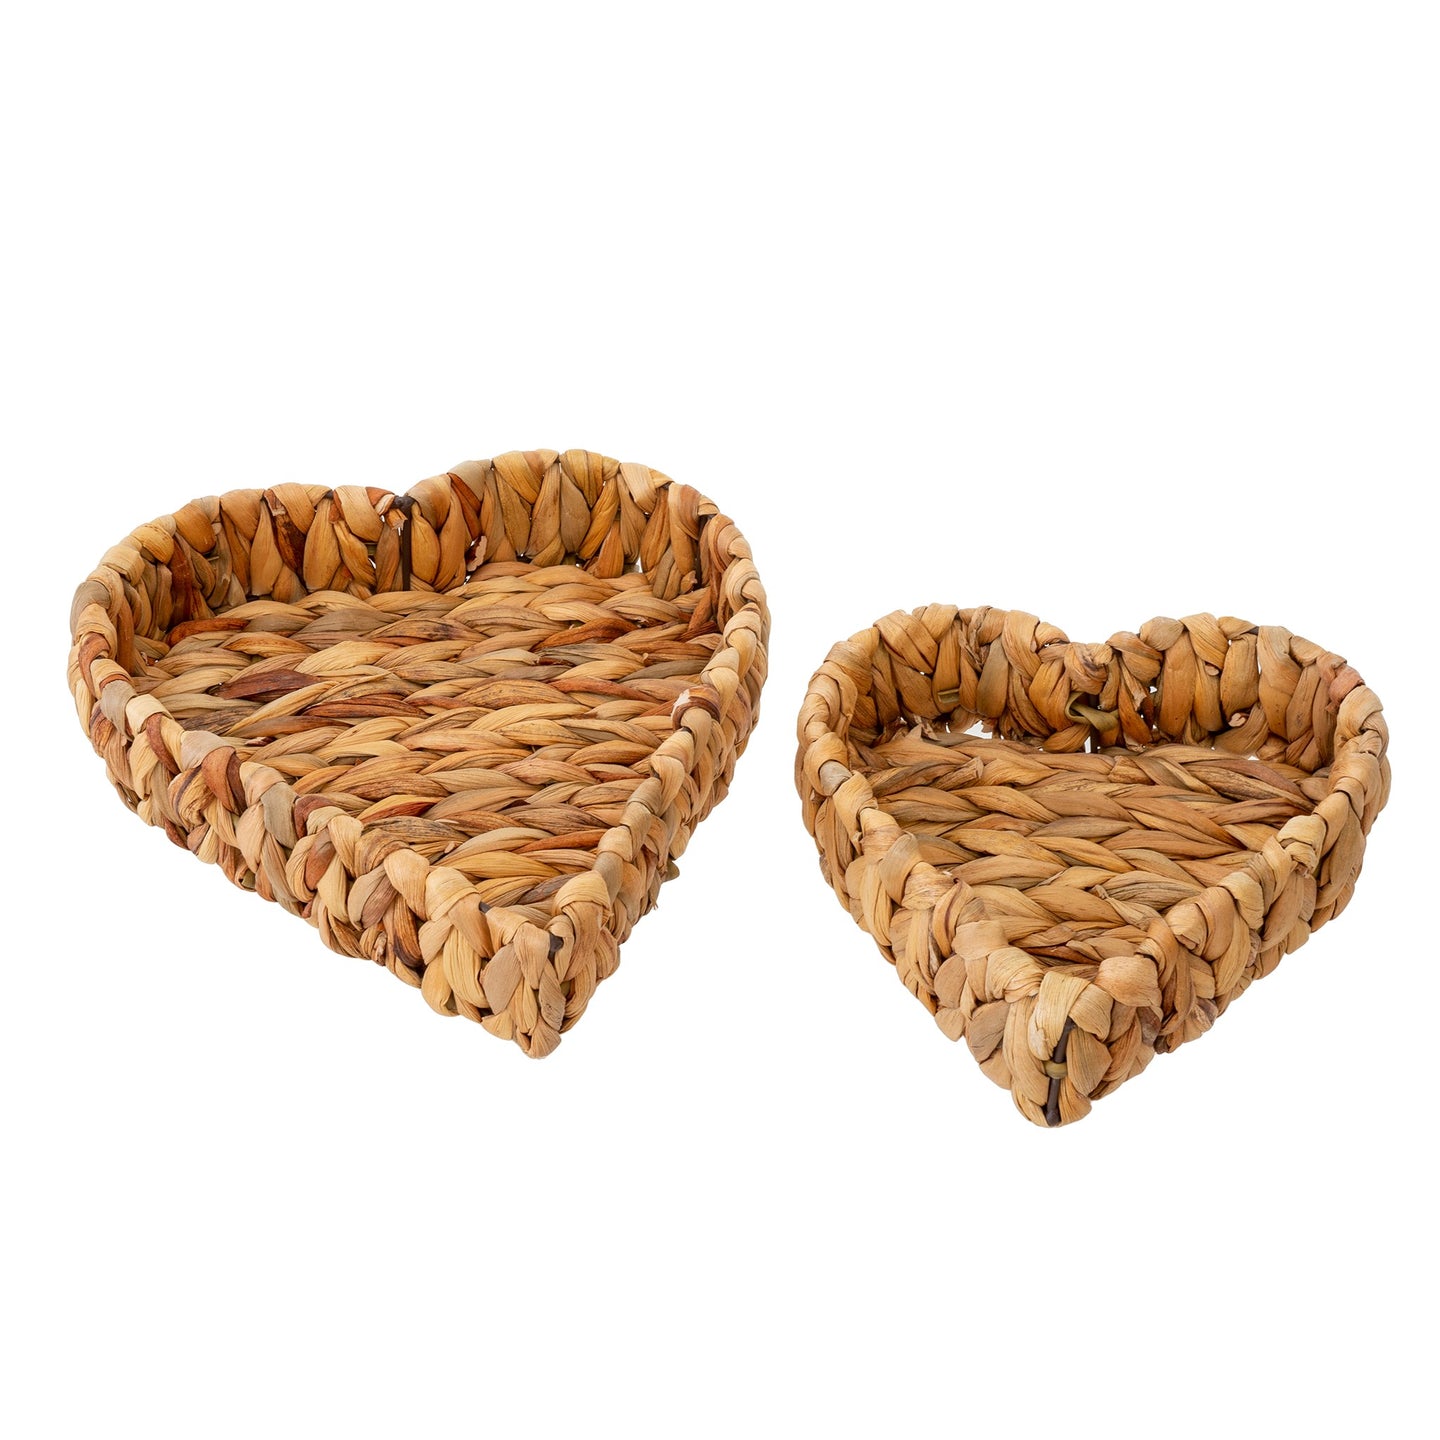 Heart Shaped Baskets